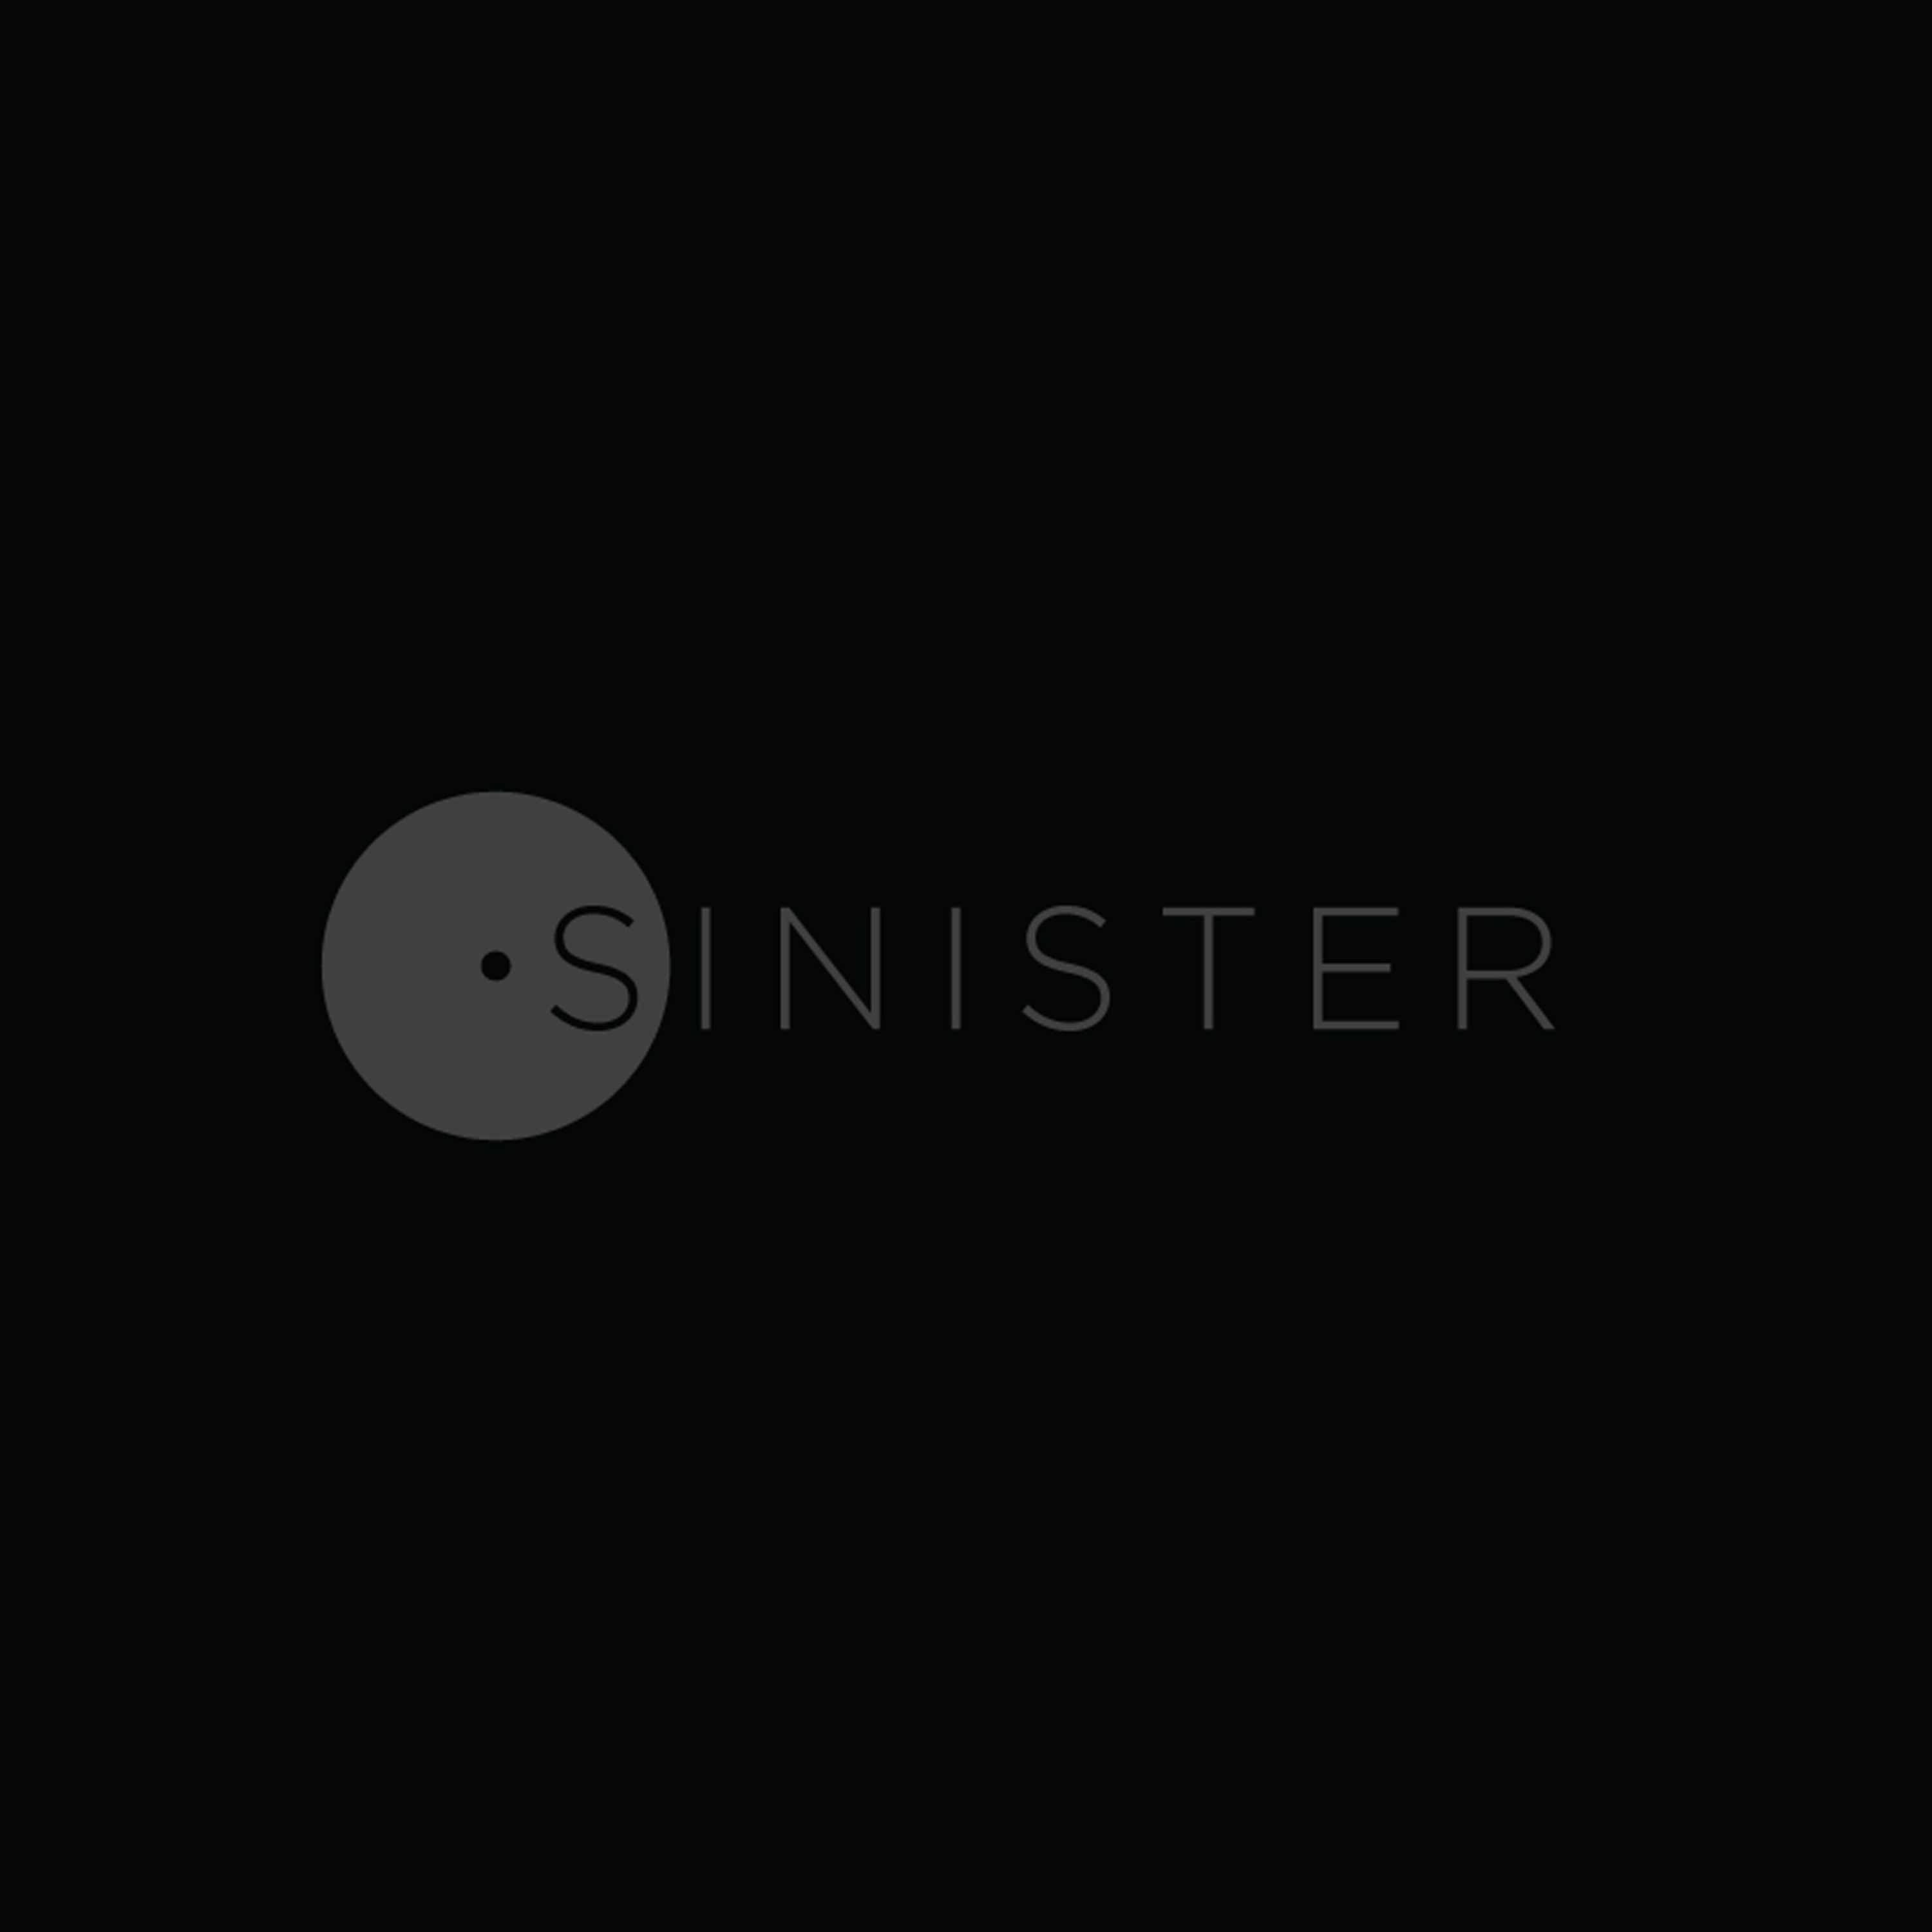 Sinister 02